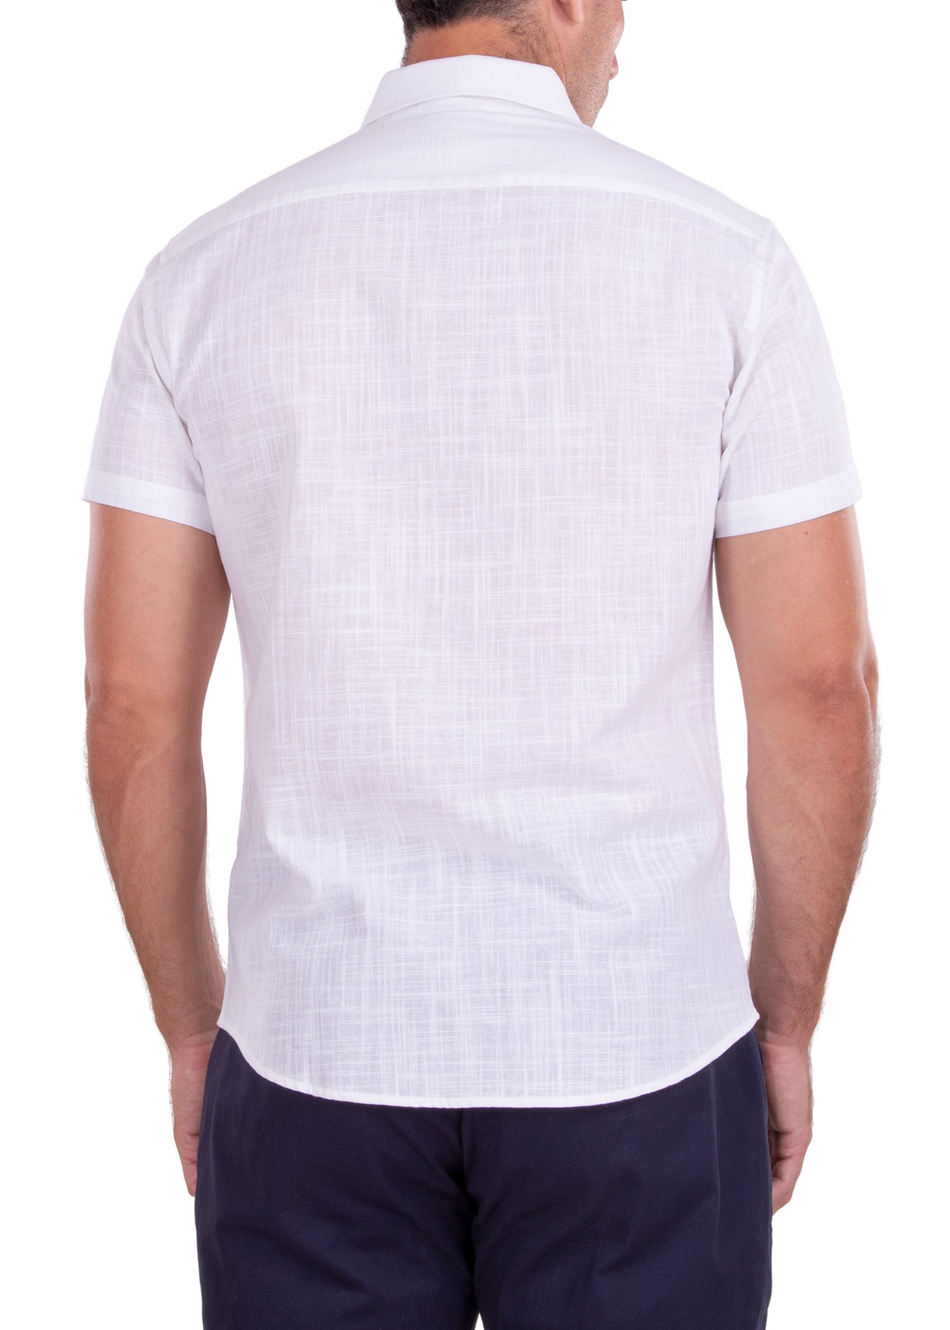 202120 - Men's White Button Up Short Sleeve Dress Shirt